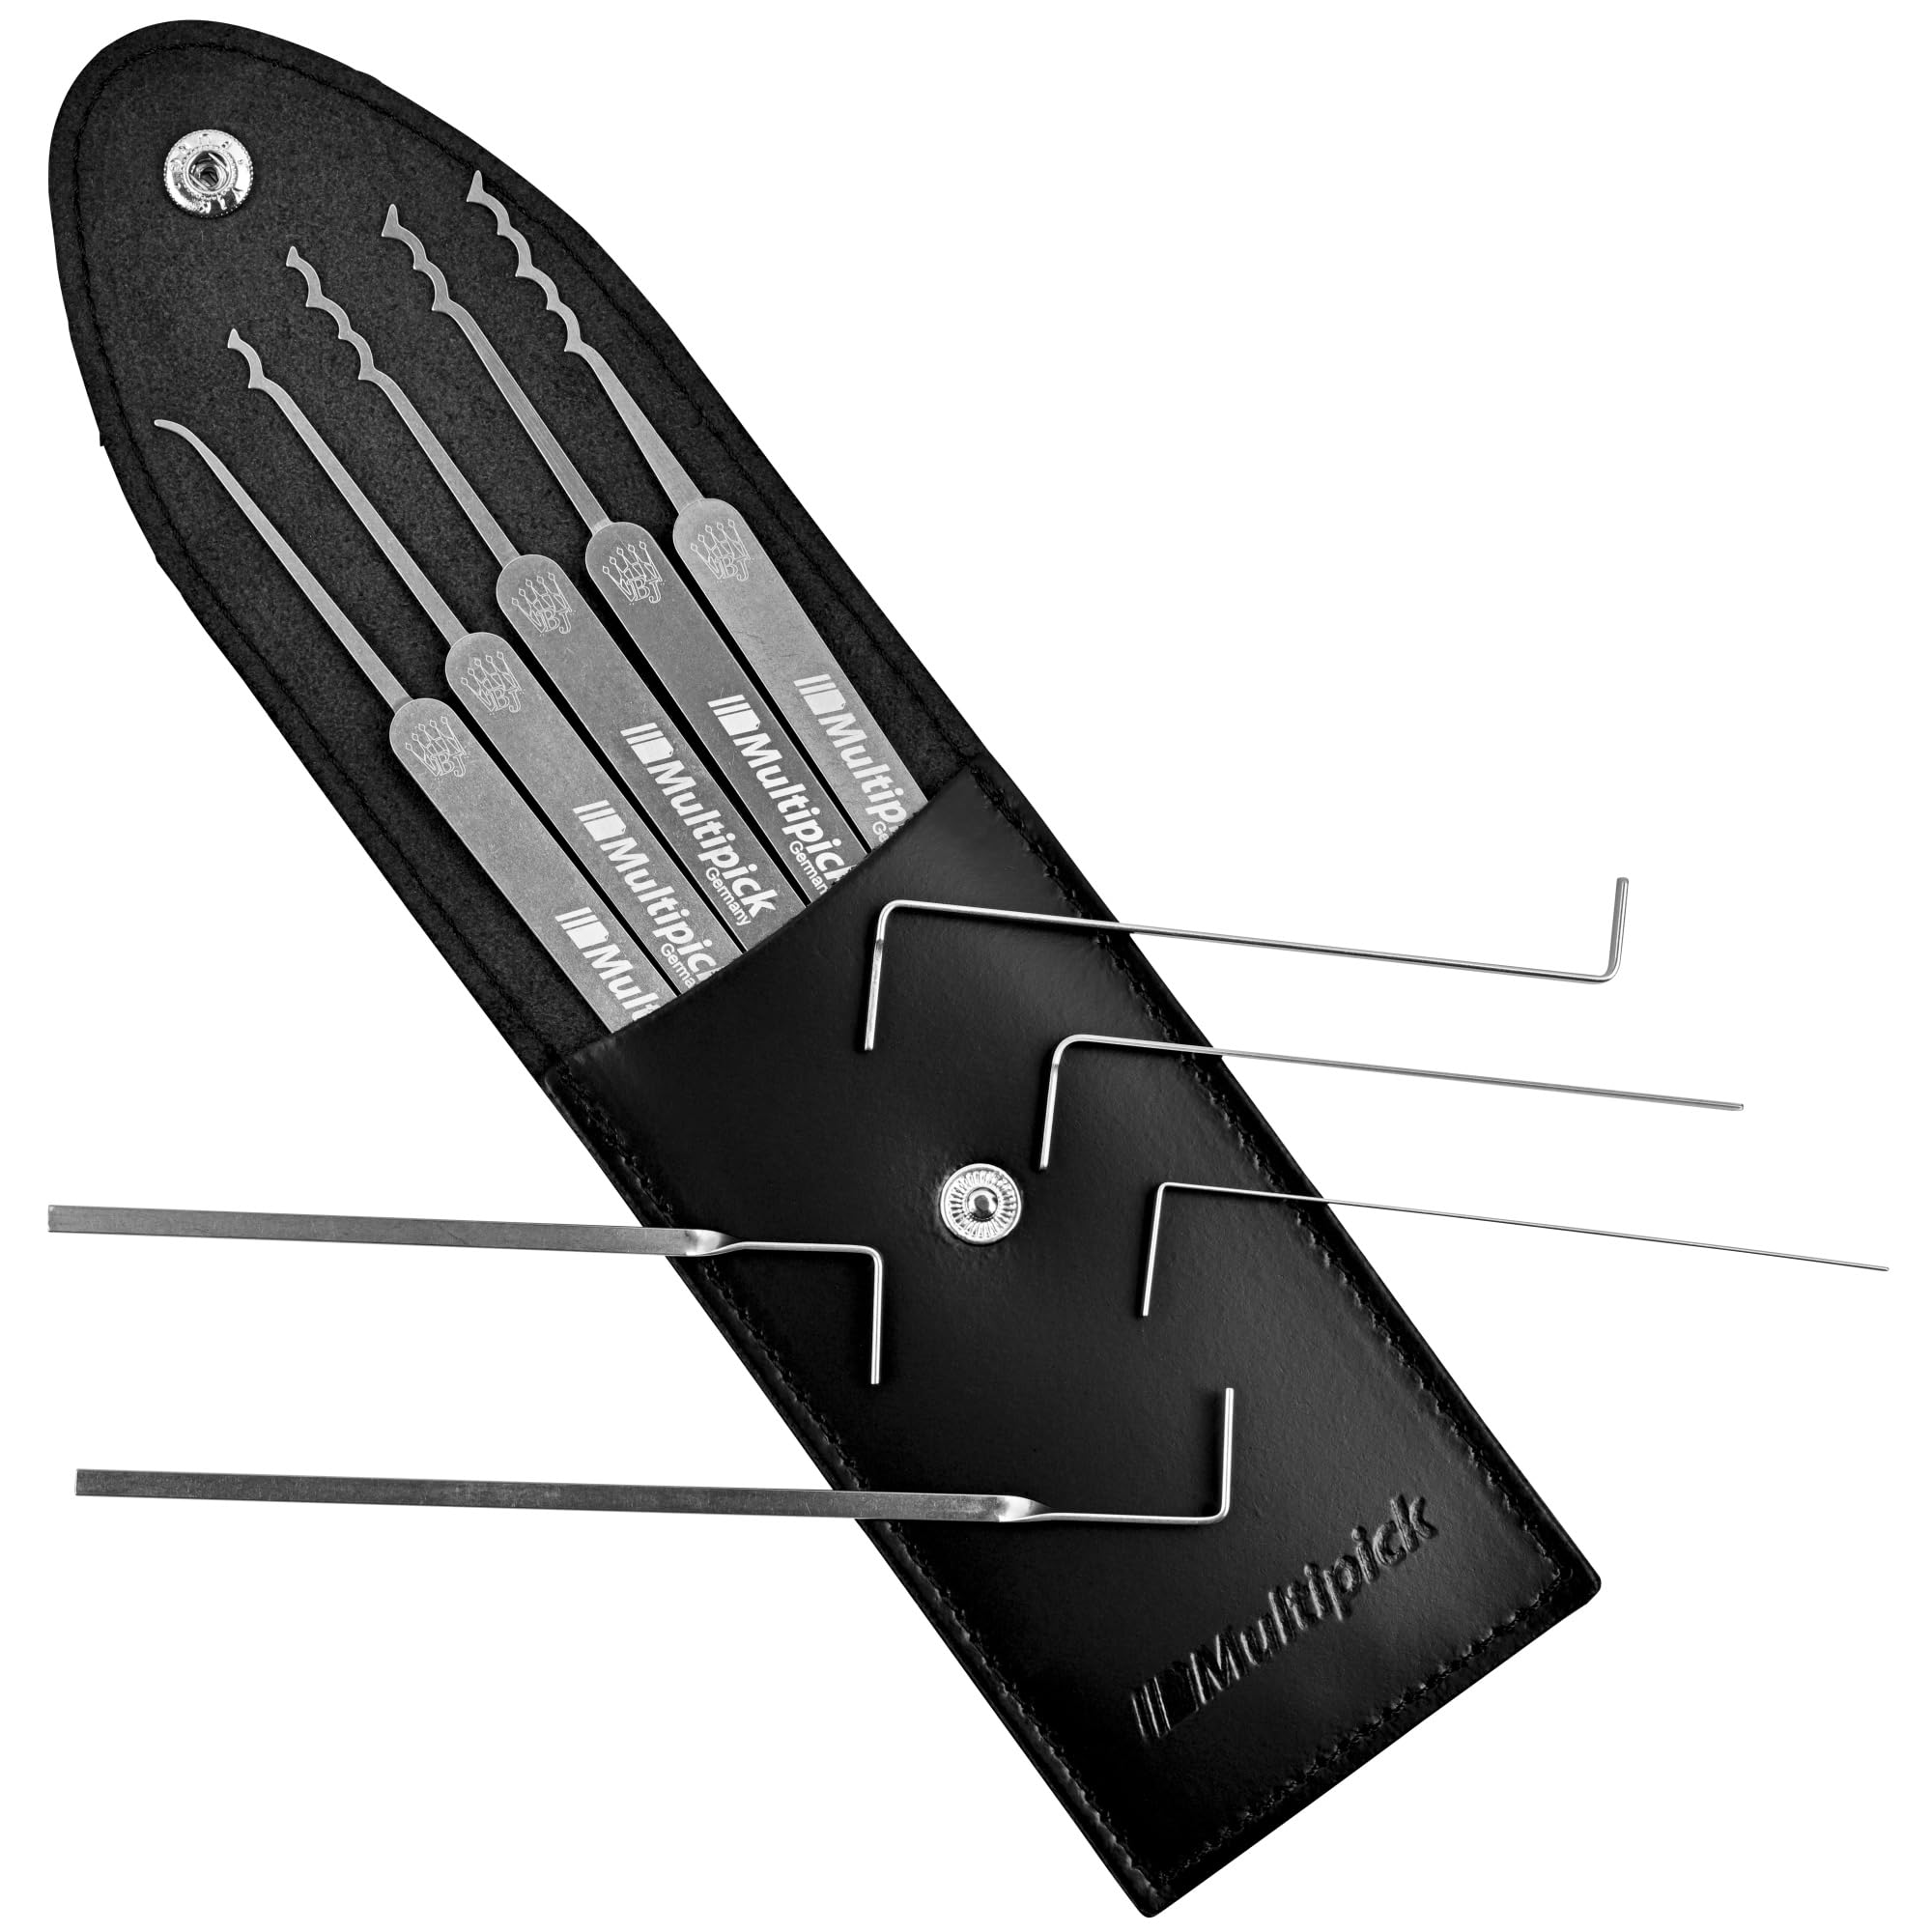 MULTIPICK ELITE 10 Profi Dietrich Set - [10 Teile | 0,6 mm] Made in Germany - Lockpick Tool, Schlösser knacken - Lock Picks inkl. Spanner - Schloss picking - Pick Set - Lockpicking Kit